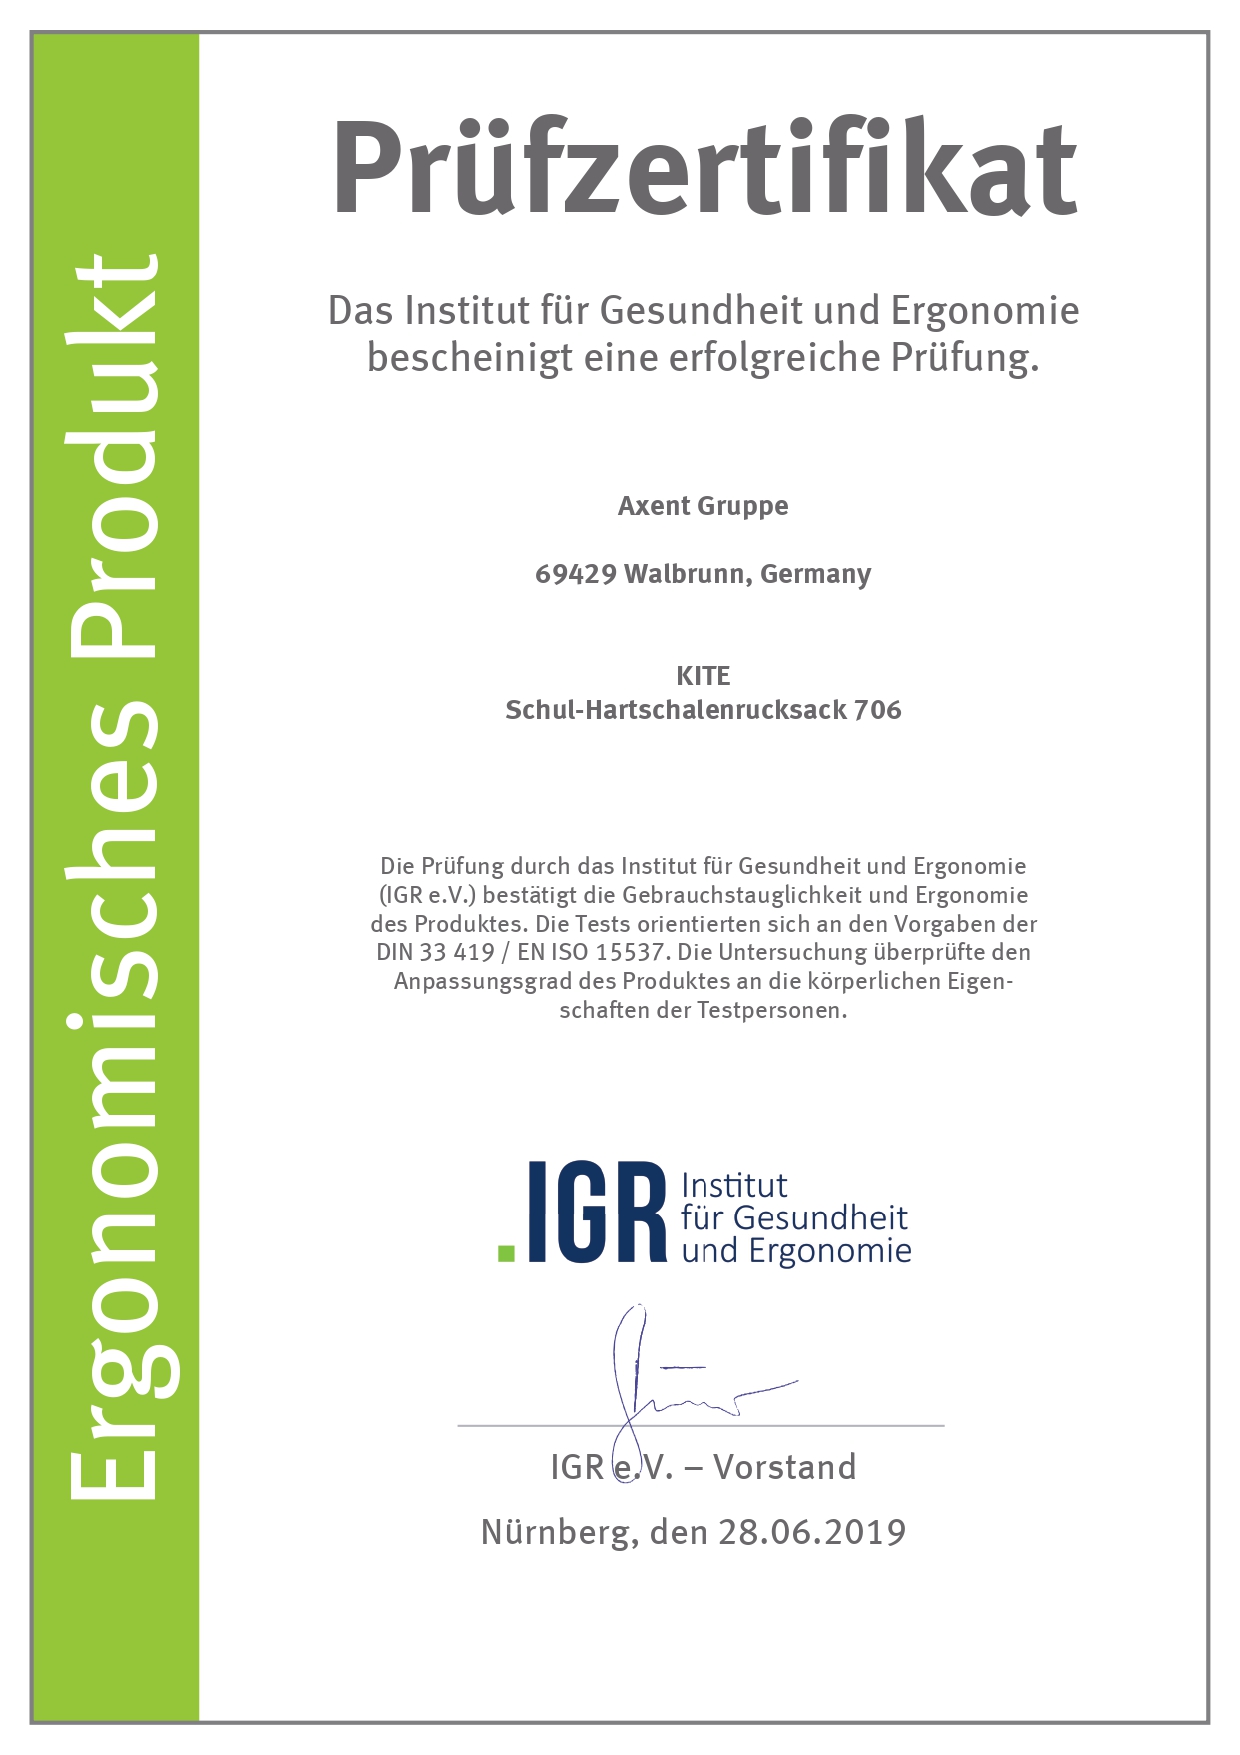 Сертифікат Німецького інституту здоров'я і ергономіки IGR - модель 706